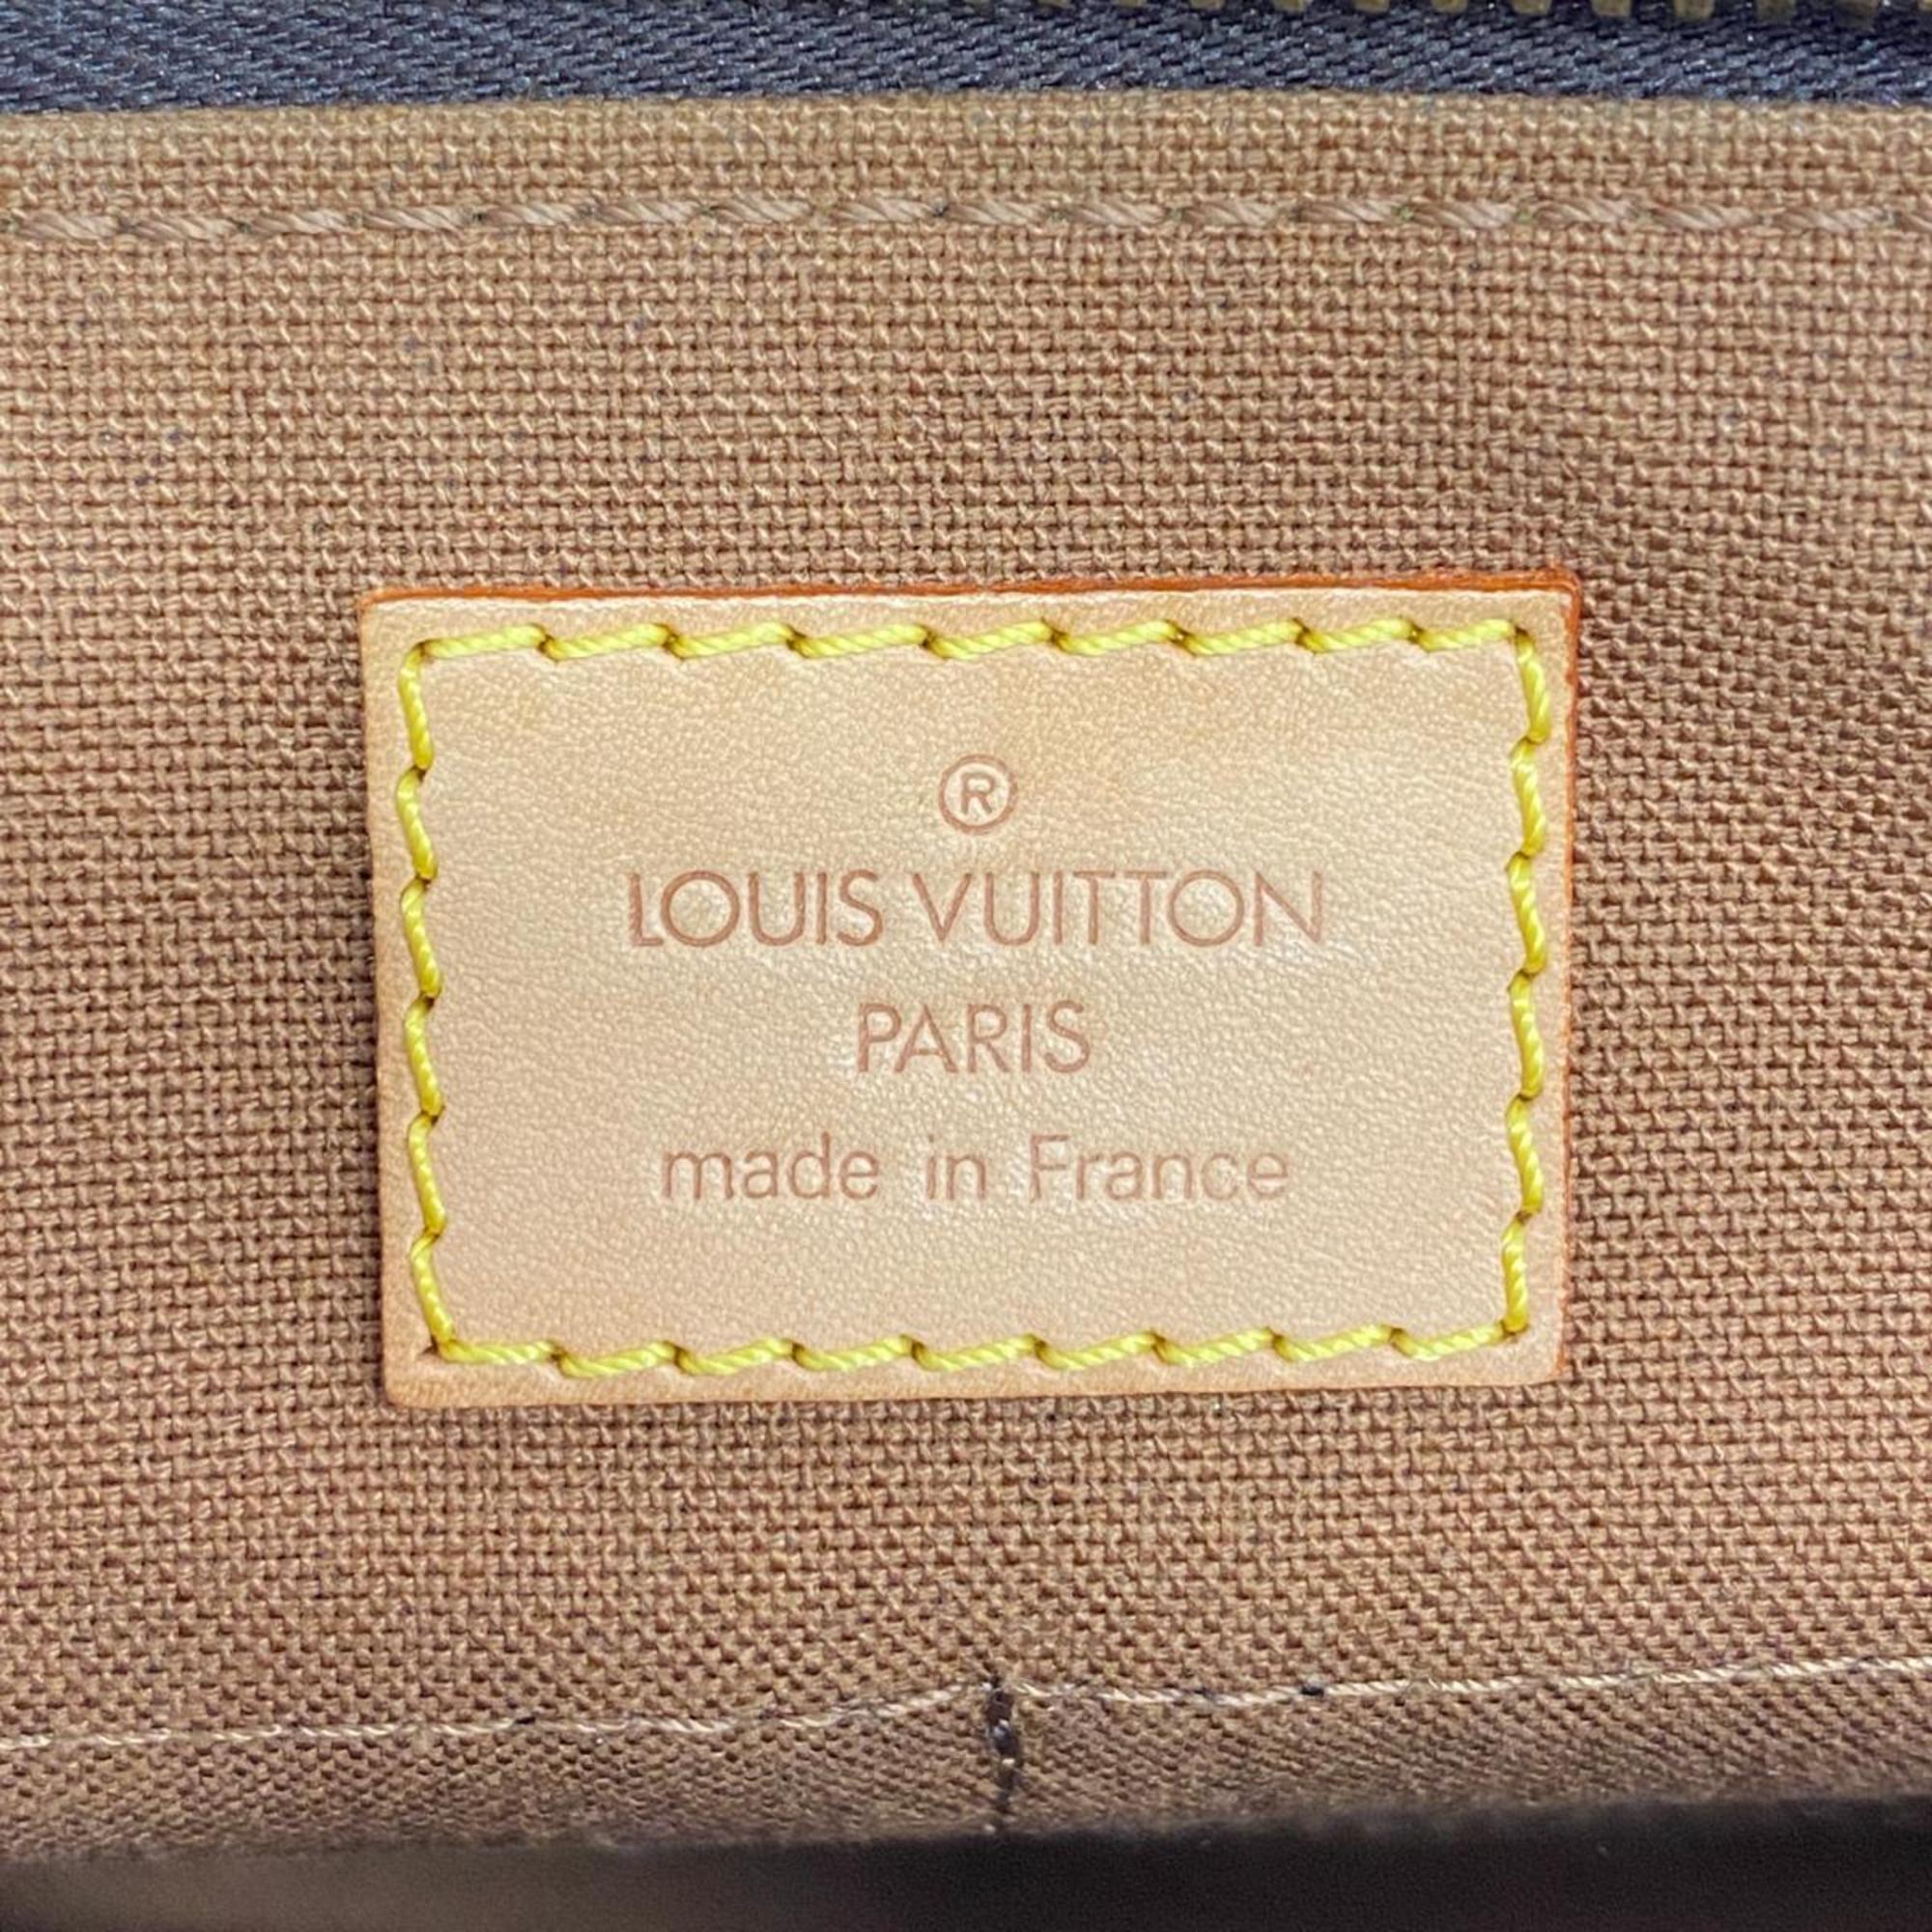 ルイ・ヴィトン(Louis Vuitton) ルイ・ヴィトン ショルダーバッグ モノグラム ポパンクールロン M40008 ブラウンレディース